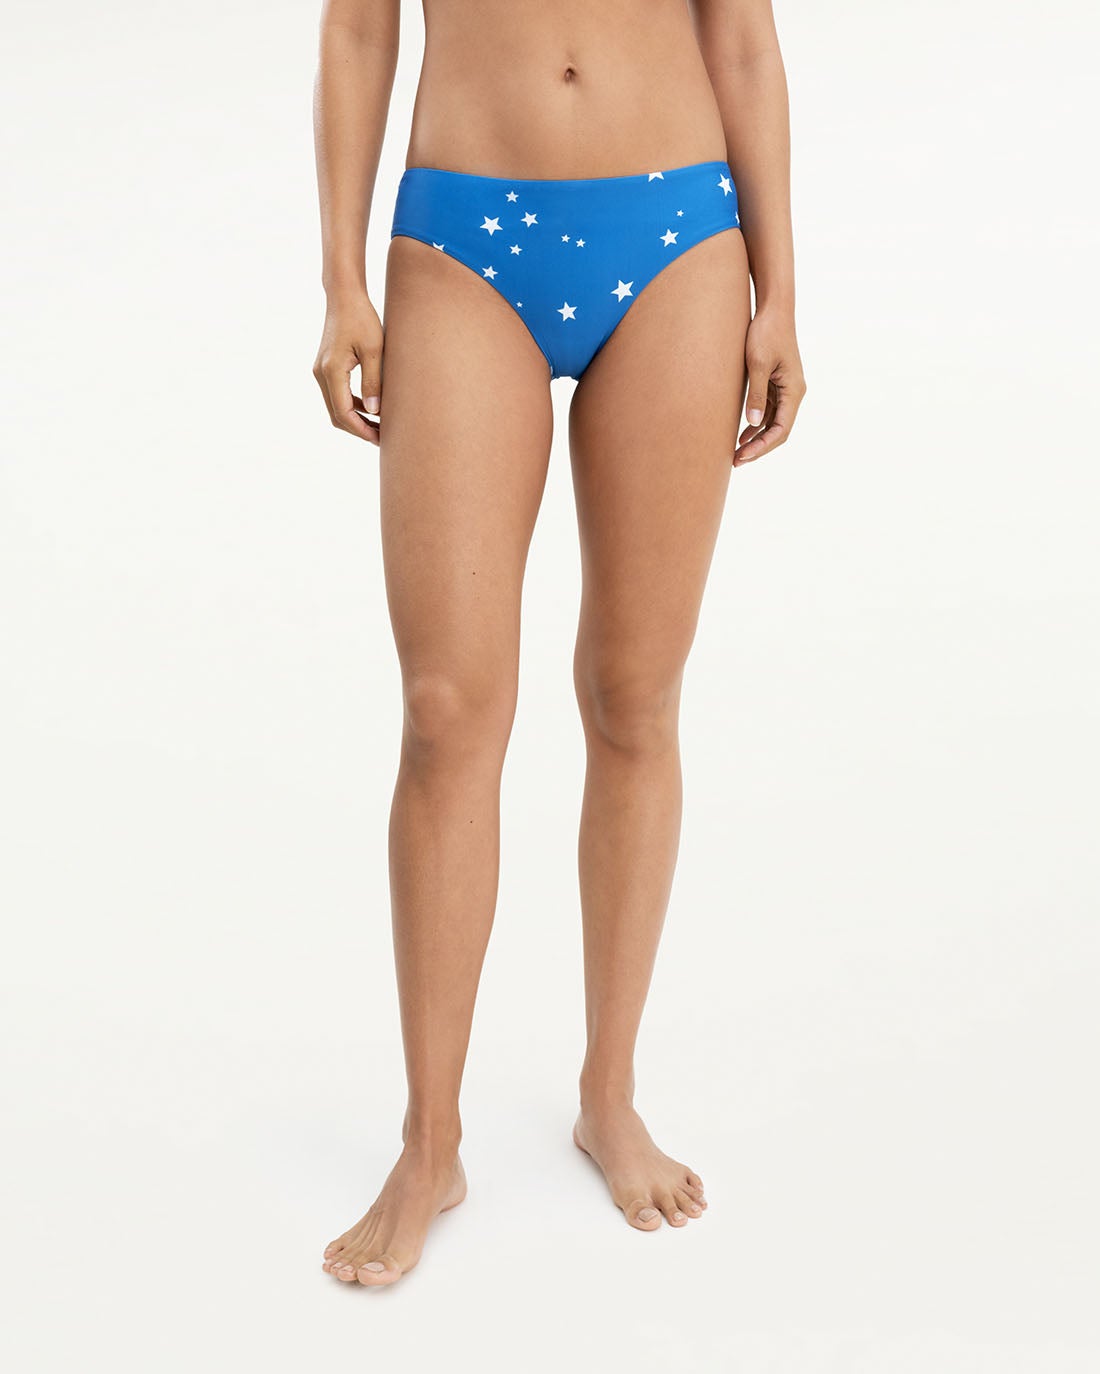 Splended Star Covered Bikini Bottom 